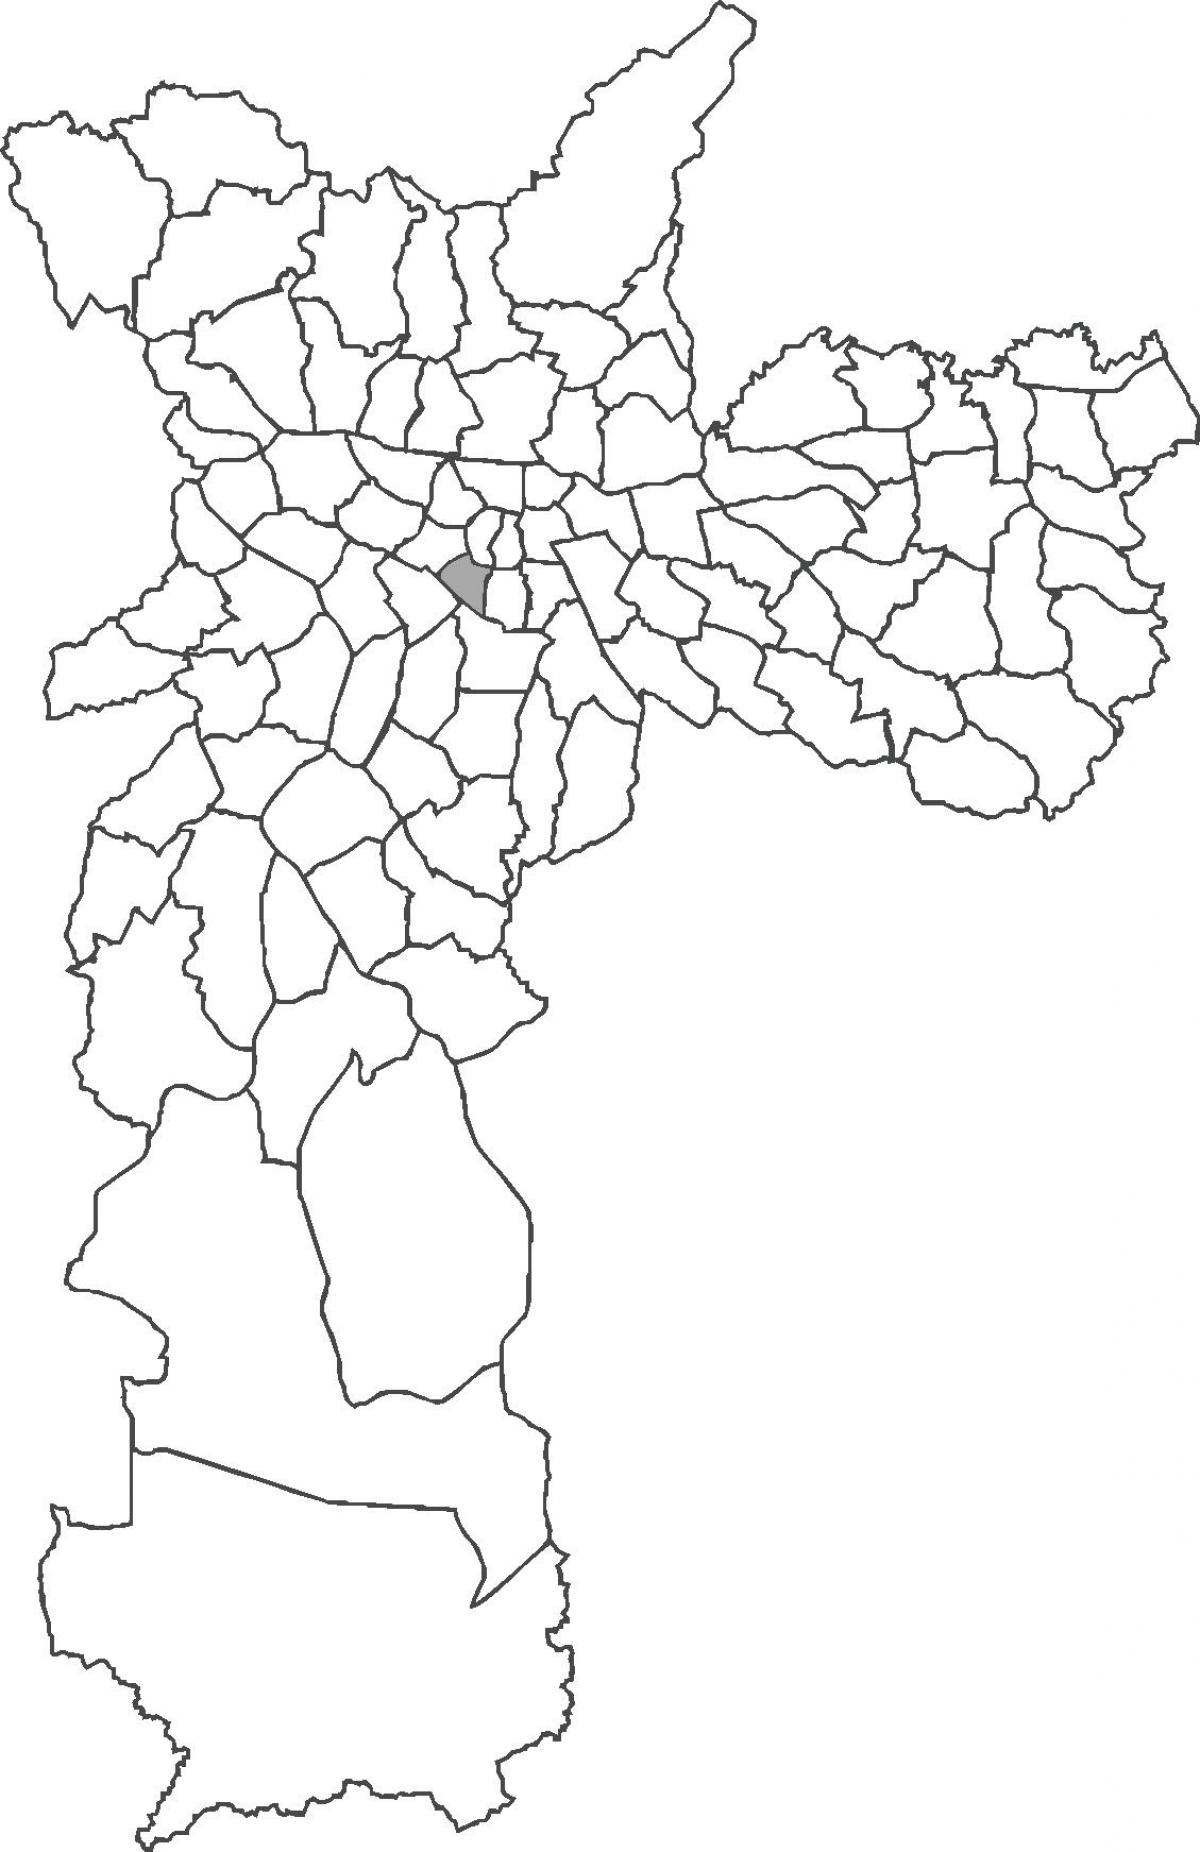 რუკა ბელა Vista უბანი